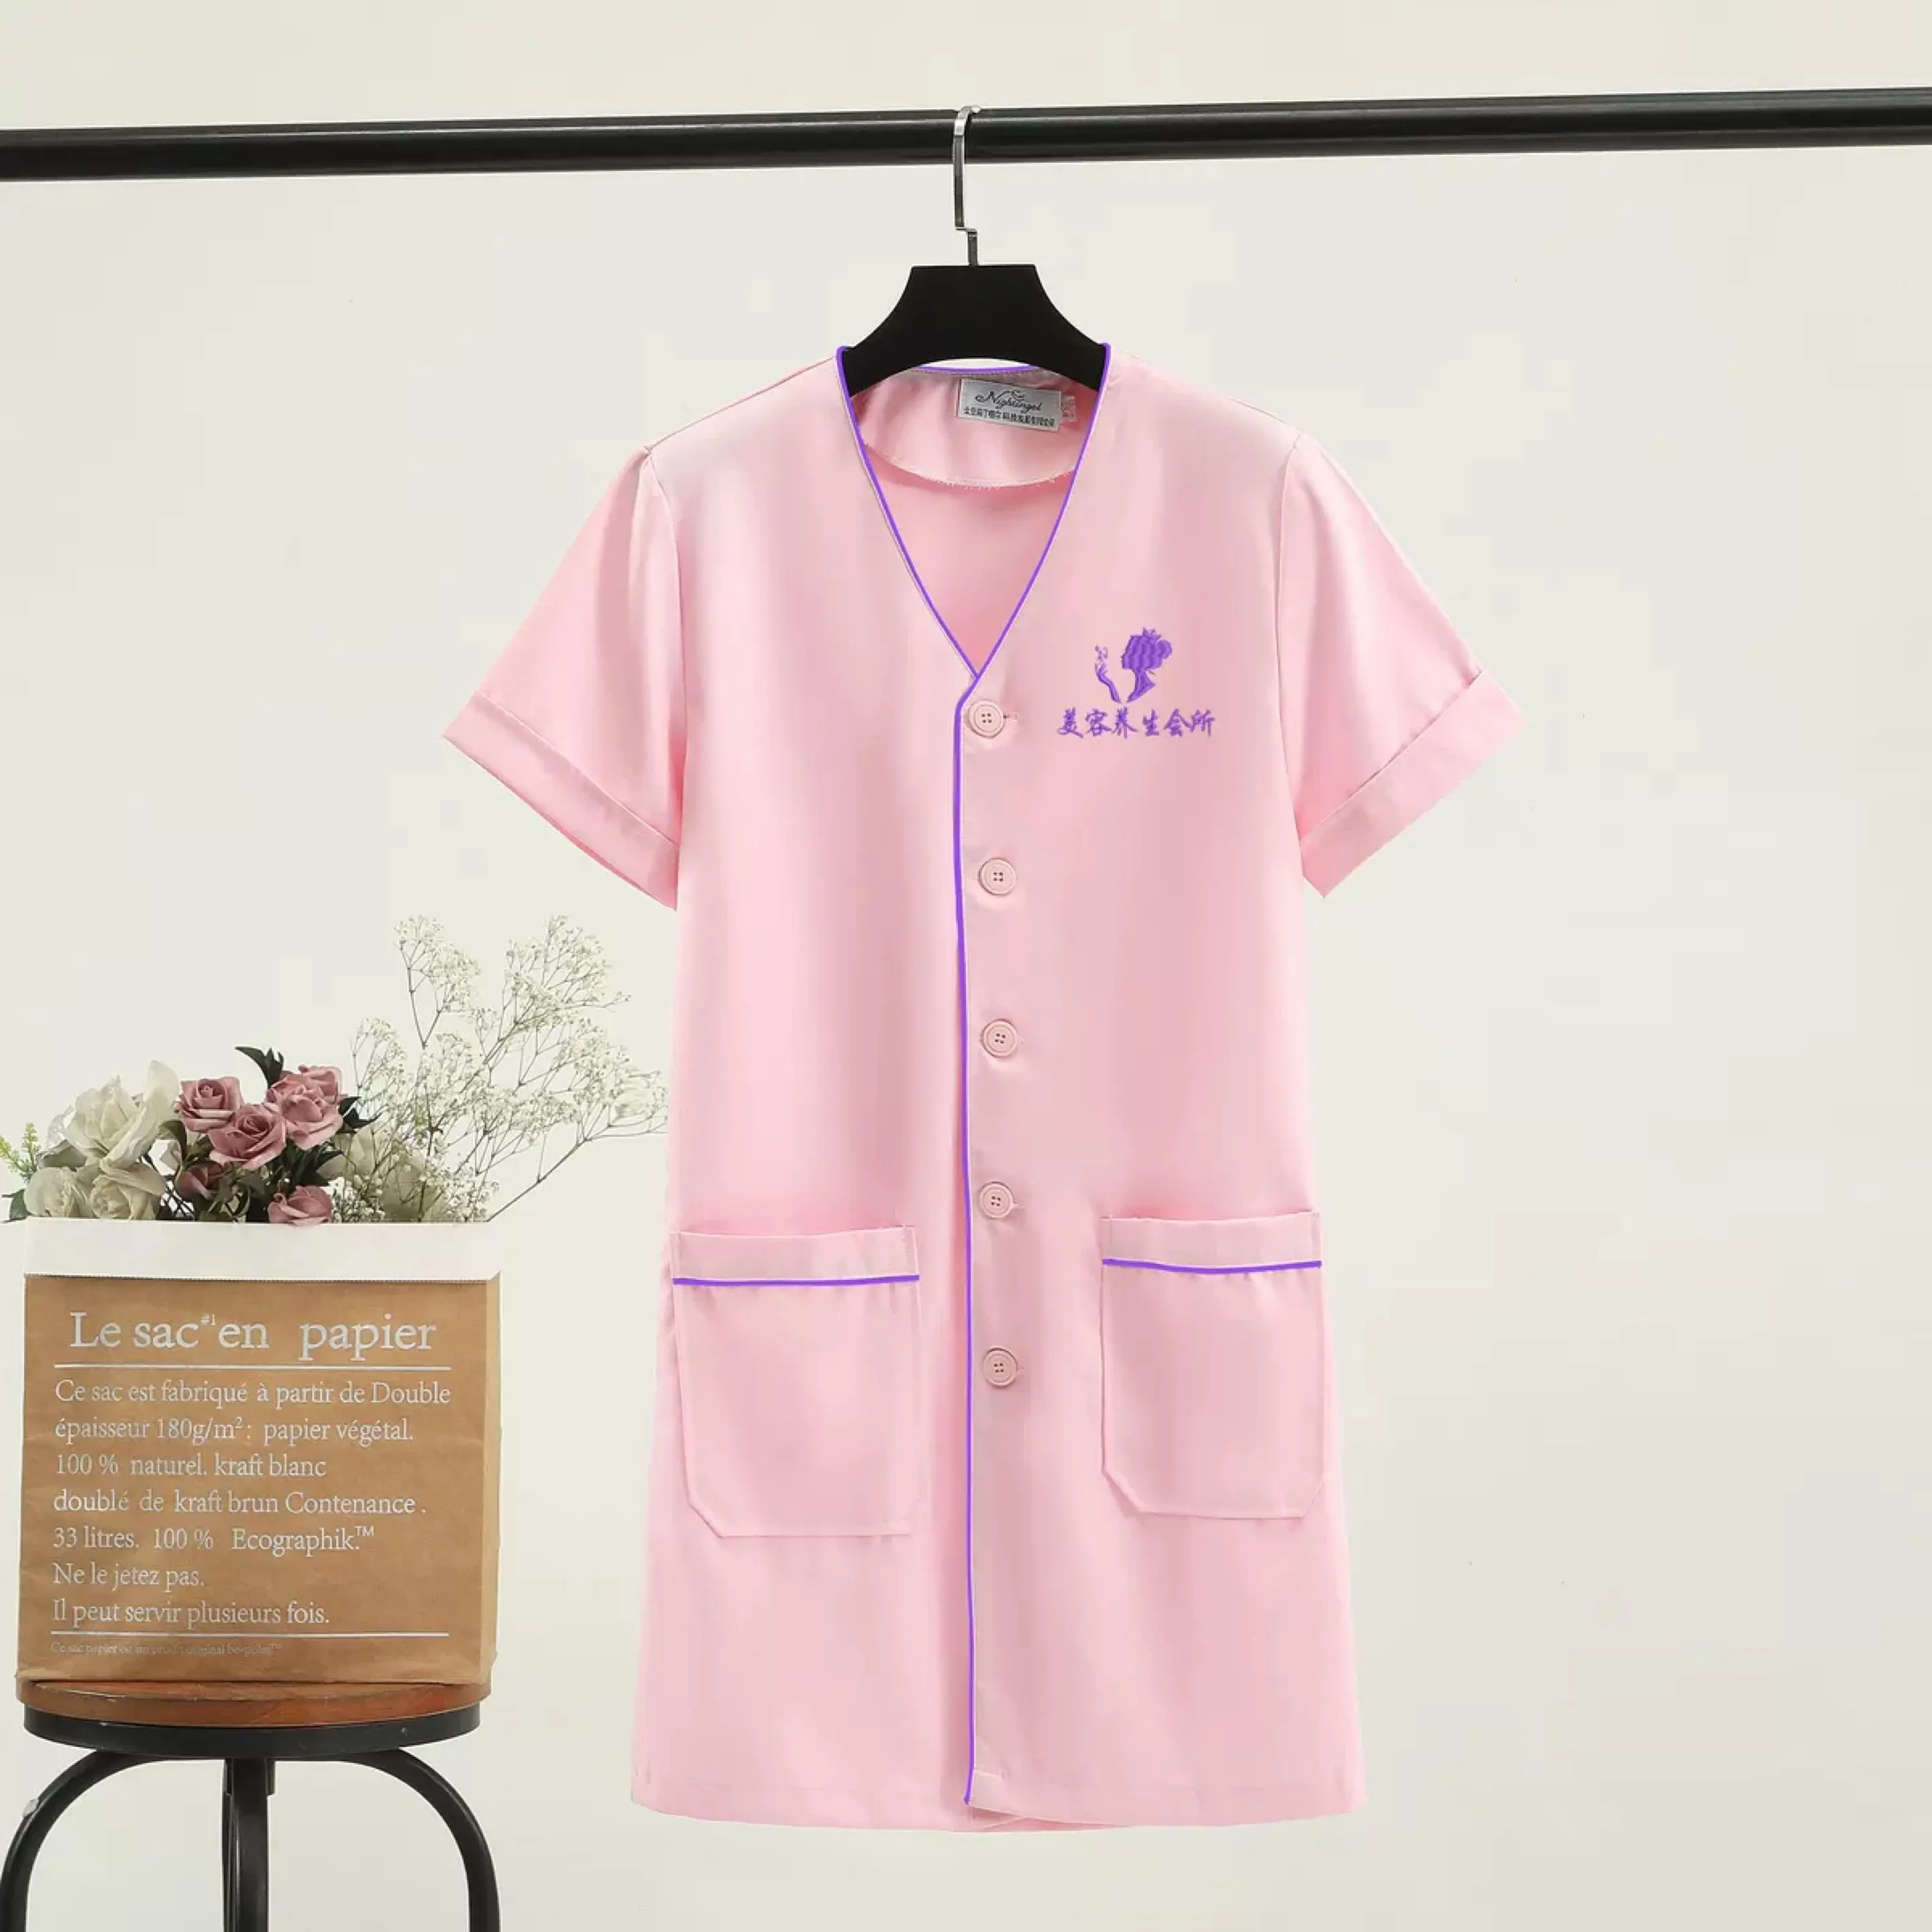 Black short Beautician tops beauty uniform dress spa uniform scrub uniform white plus size Salon grooming clothes Lab coat logo images - 6